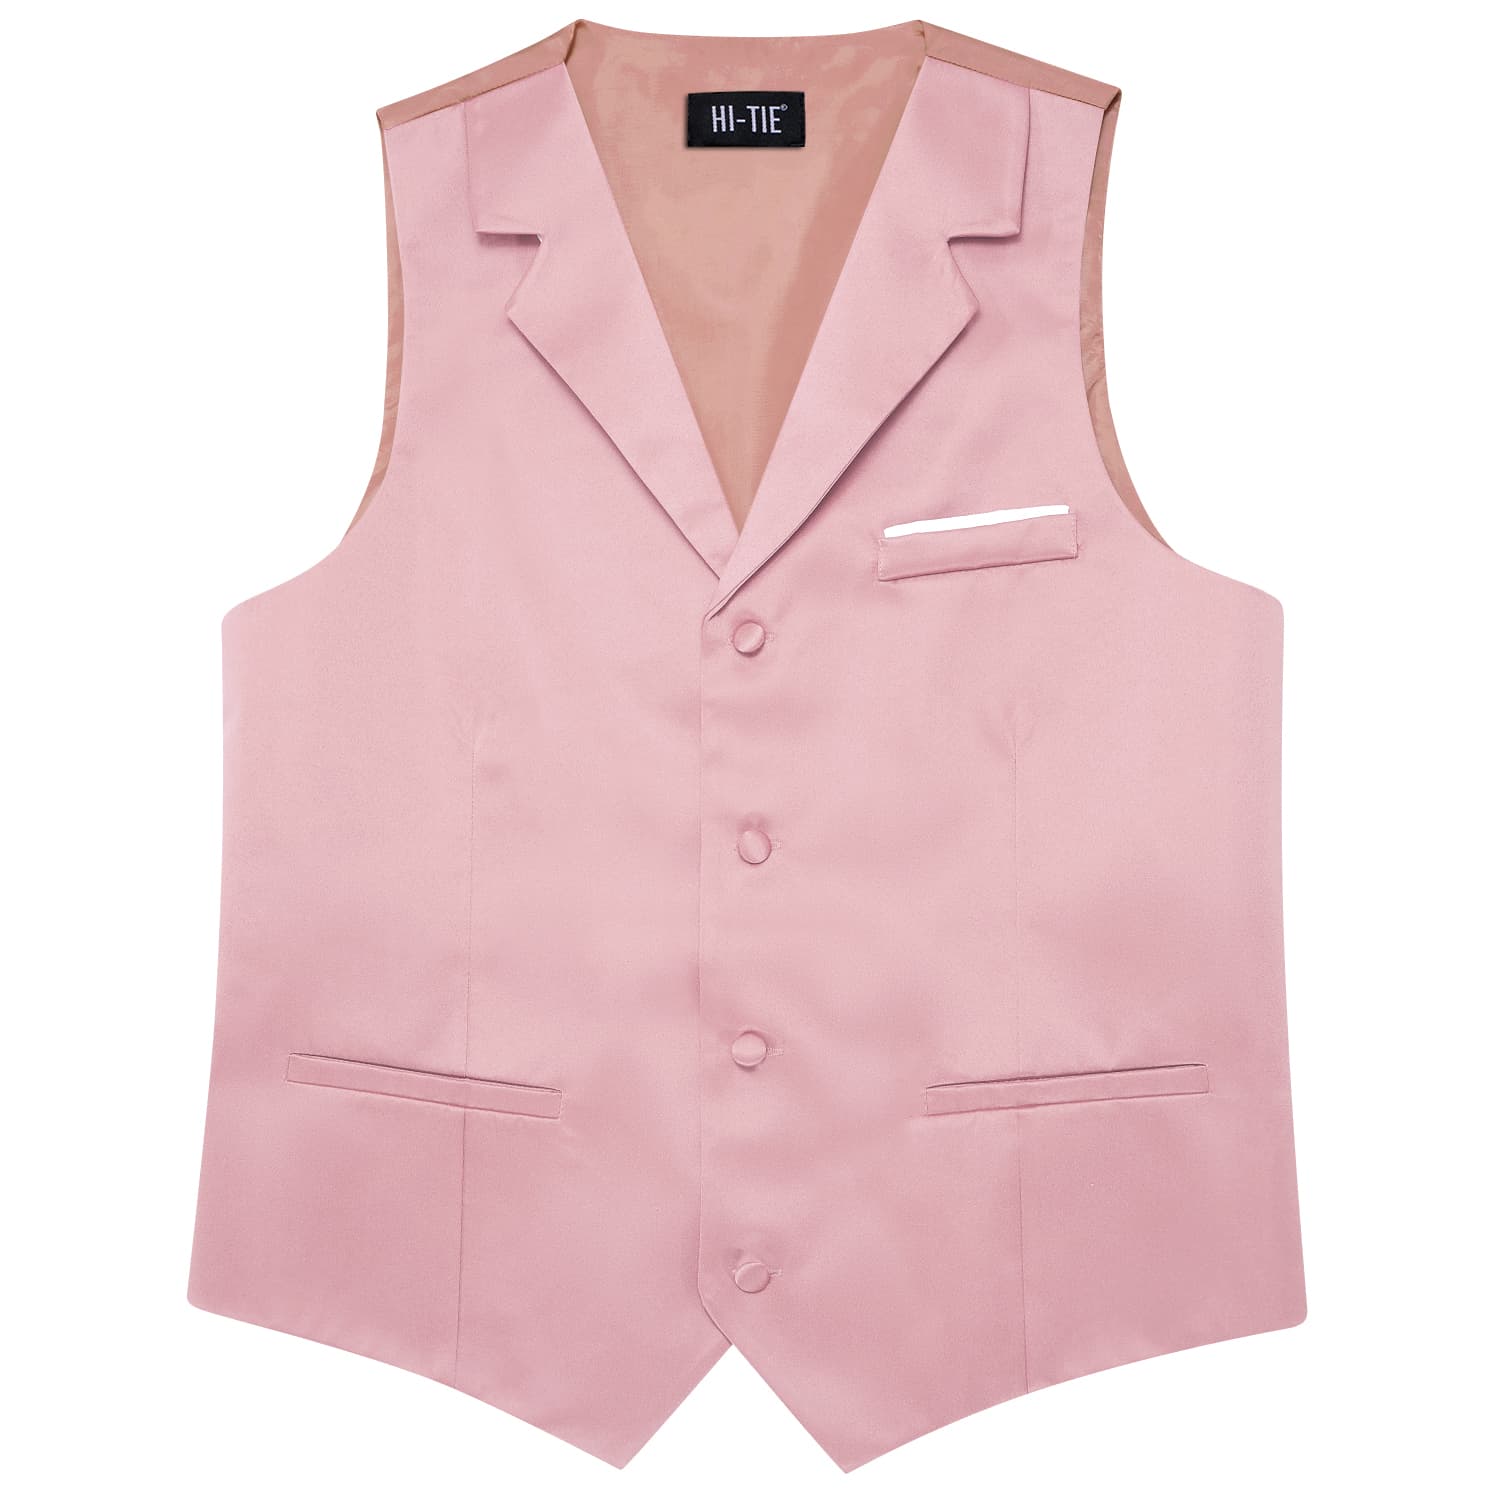 Hi-Tie Lighgt Pink Waistcoat Solid Notch lapels Men's Vest